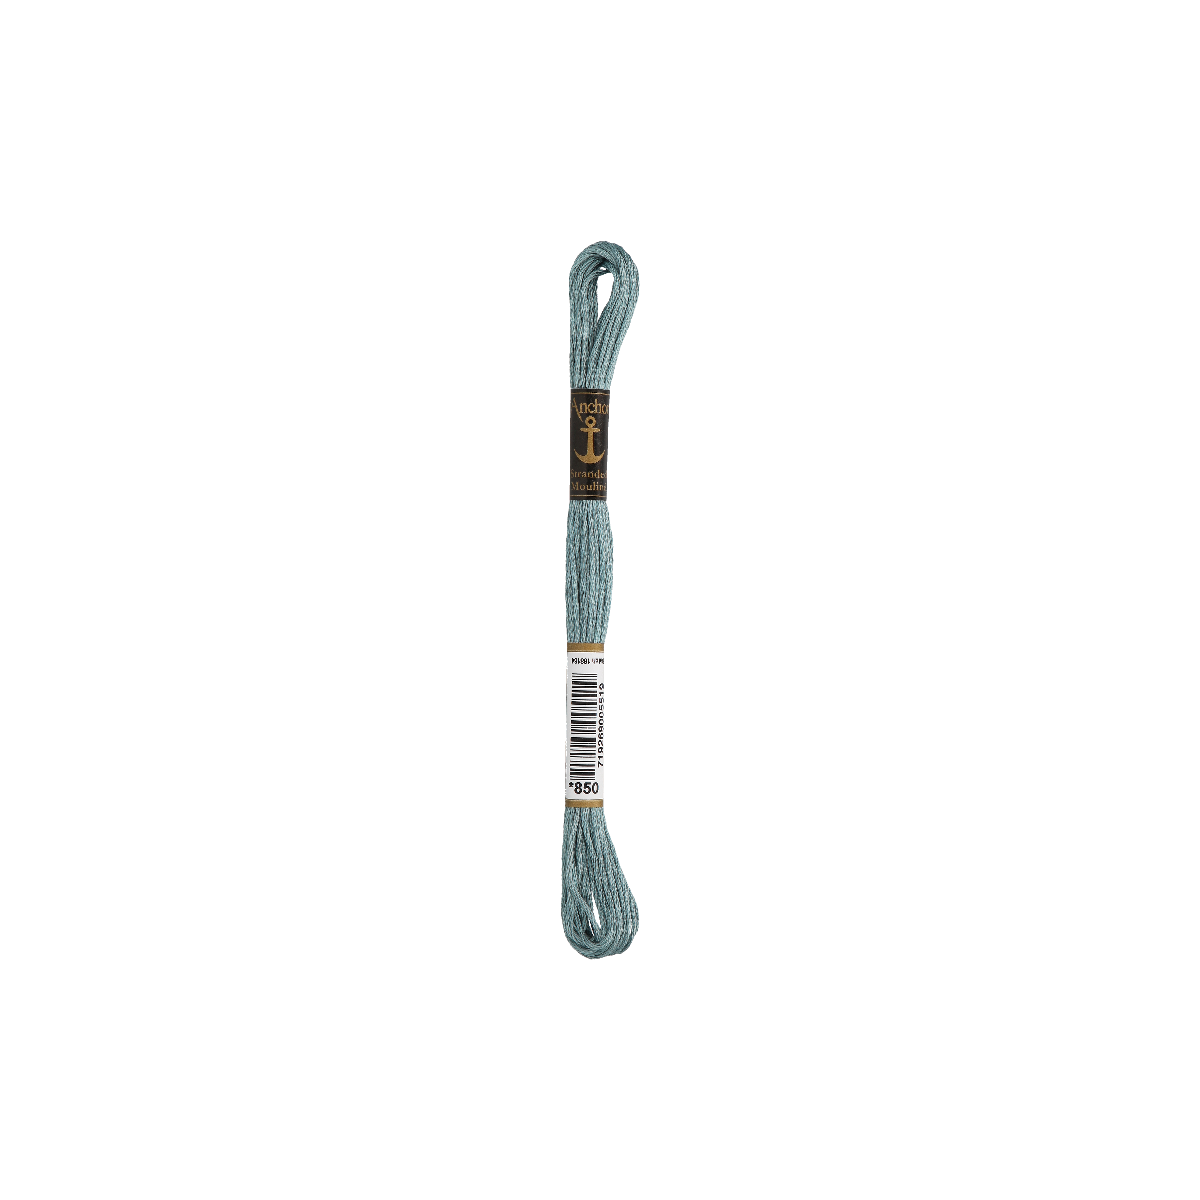 Anchor Sticktwist 8m, graublau, Baumwolle, Farbe 850,...